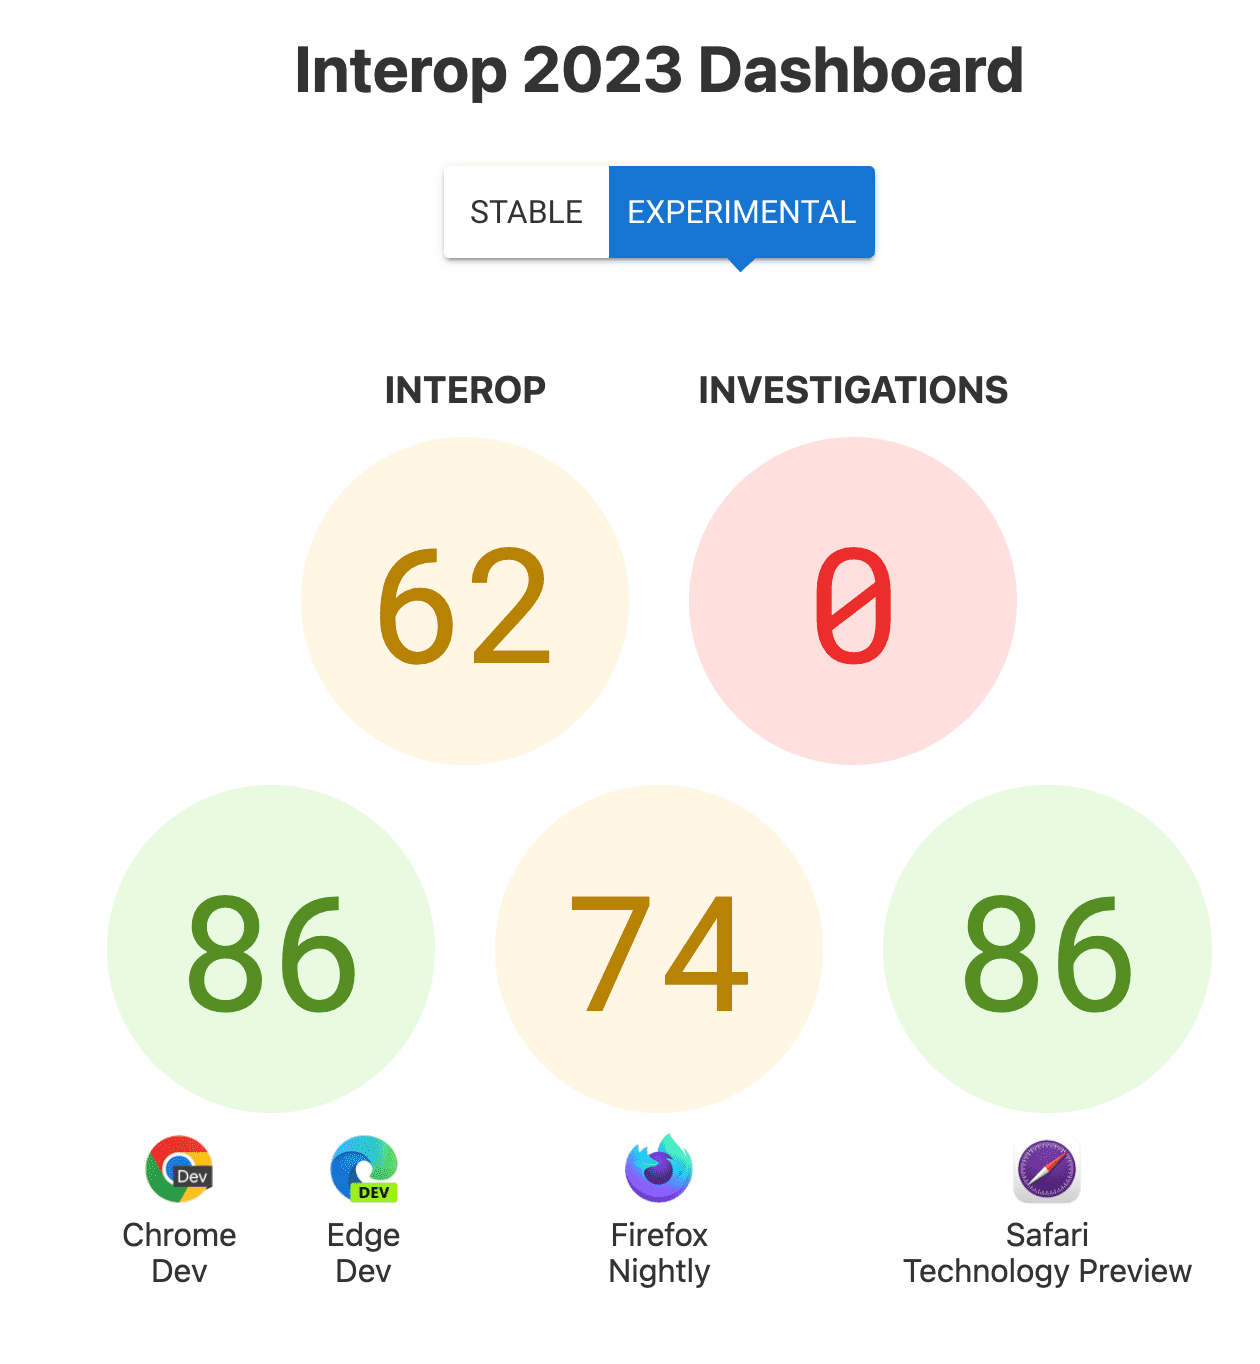 互操作性总体得分：62；调查结果：0；每个浏览器的得分：86 分（Chrome 和 Edge）、74 分（Firefox）、86（Safari 技术预览）。